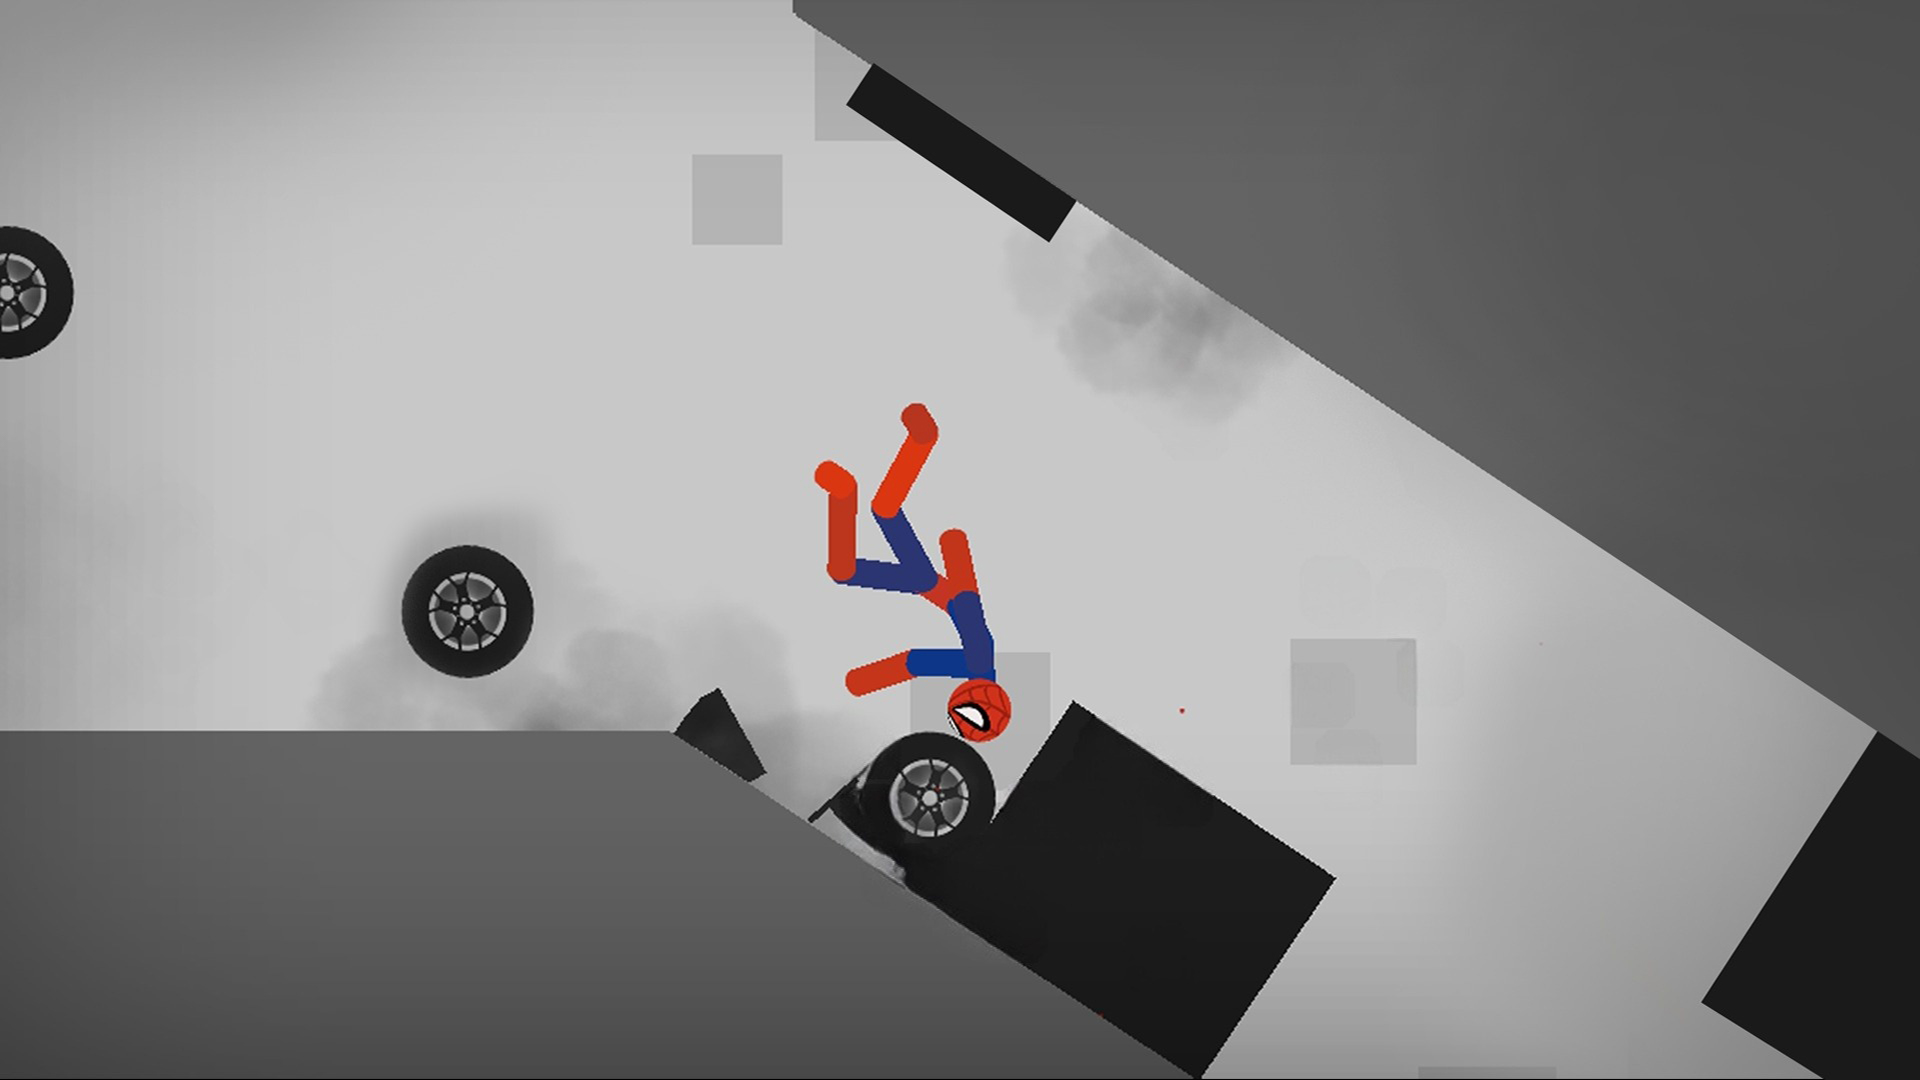 火柴人撞车模拟游戏下载,火柴人撞车模拟游戏官方版 v1.0